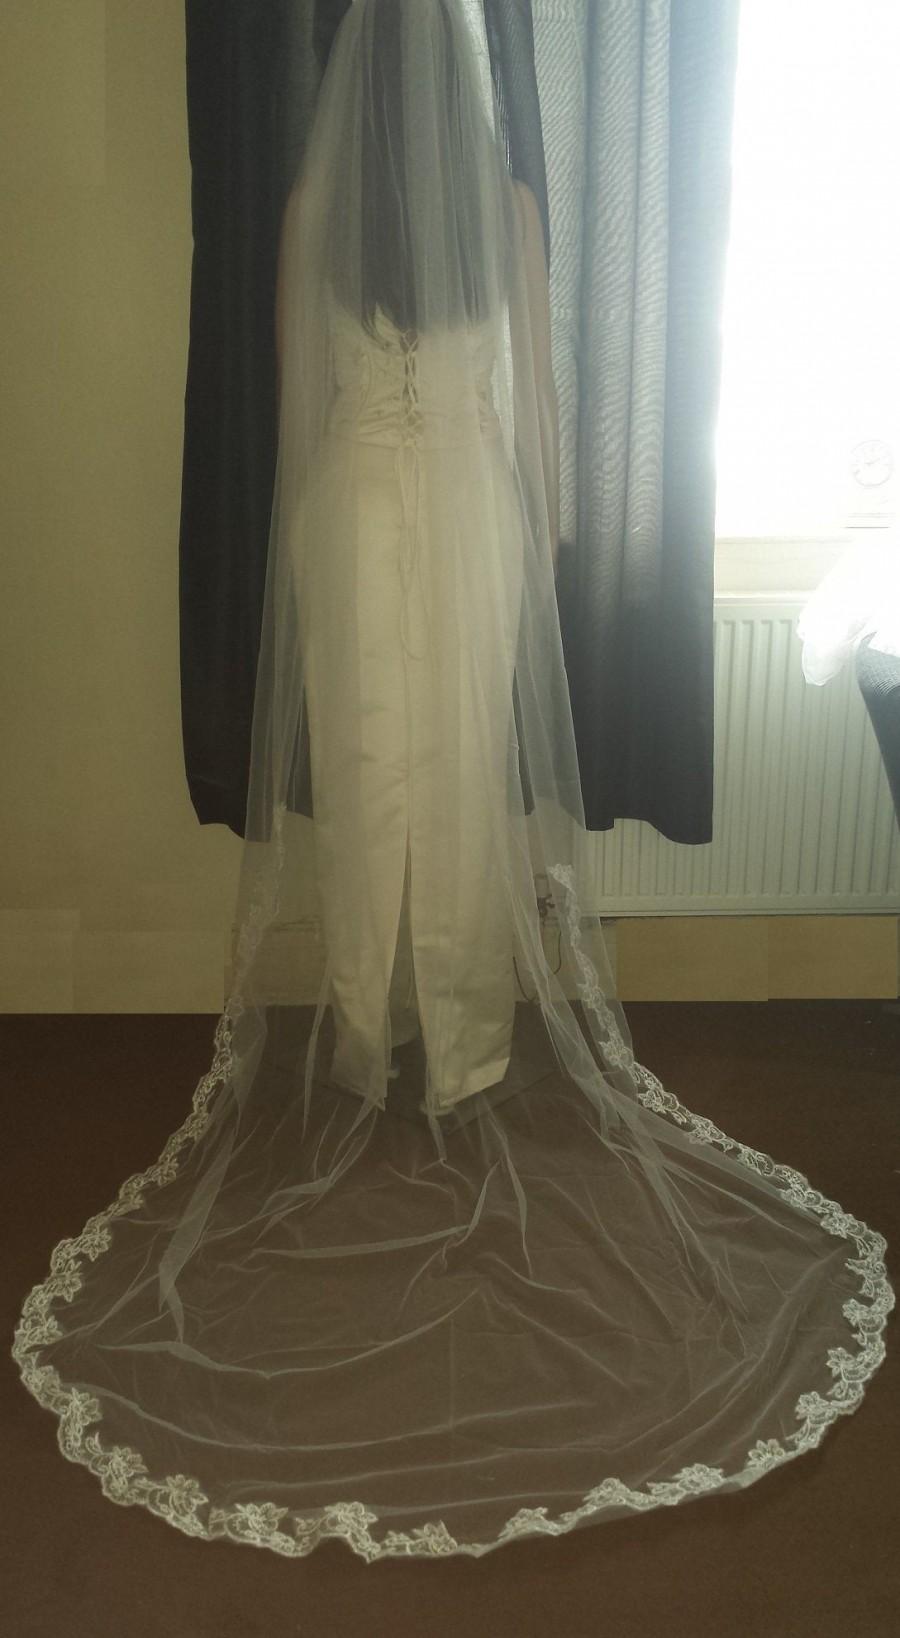 زفاف - Lace Wedding Veil Pale Ivory / Ivory. 3 Meter long wedding veil with lace trim. 1 Tier veil Soft tulle Free UK postage.